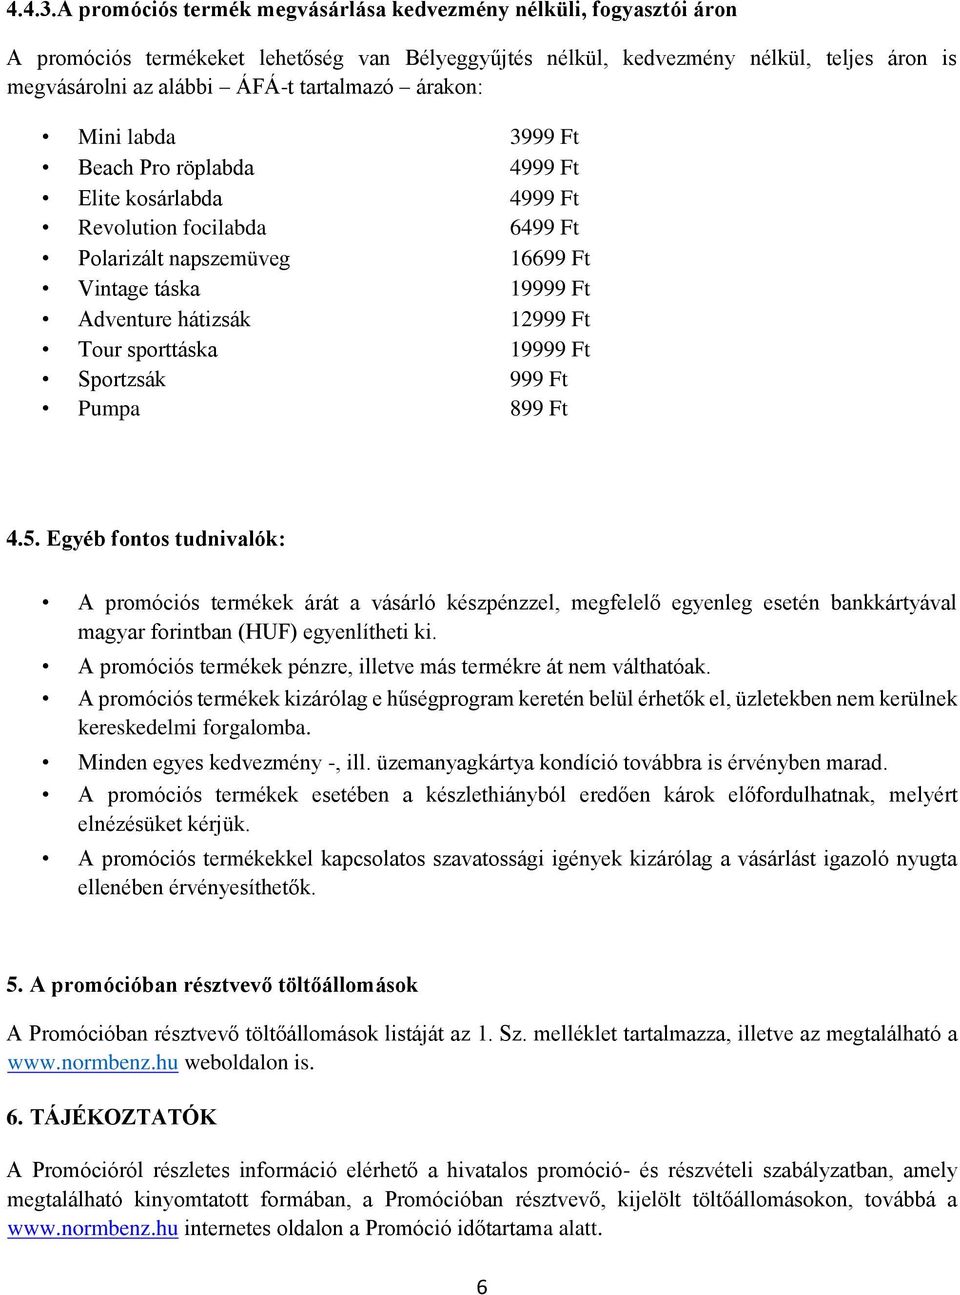 Hivatalos promóciós részvételi,- és játékszabályzat. Fogyasztói promóció a  magyarországi Lukoil töltőállomásokon - PDF Ingyenes letöltés